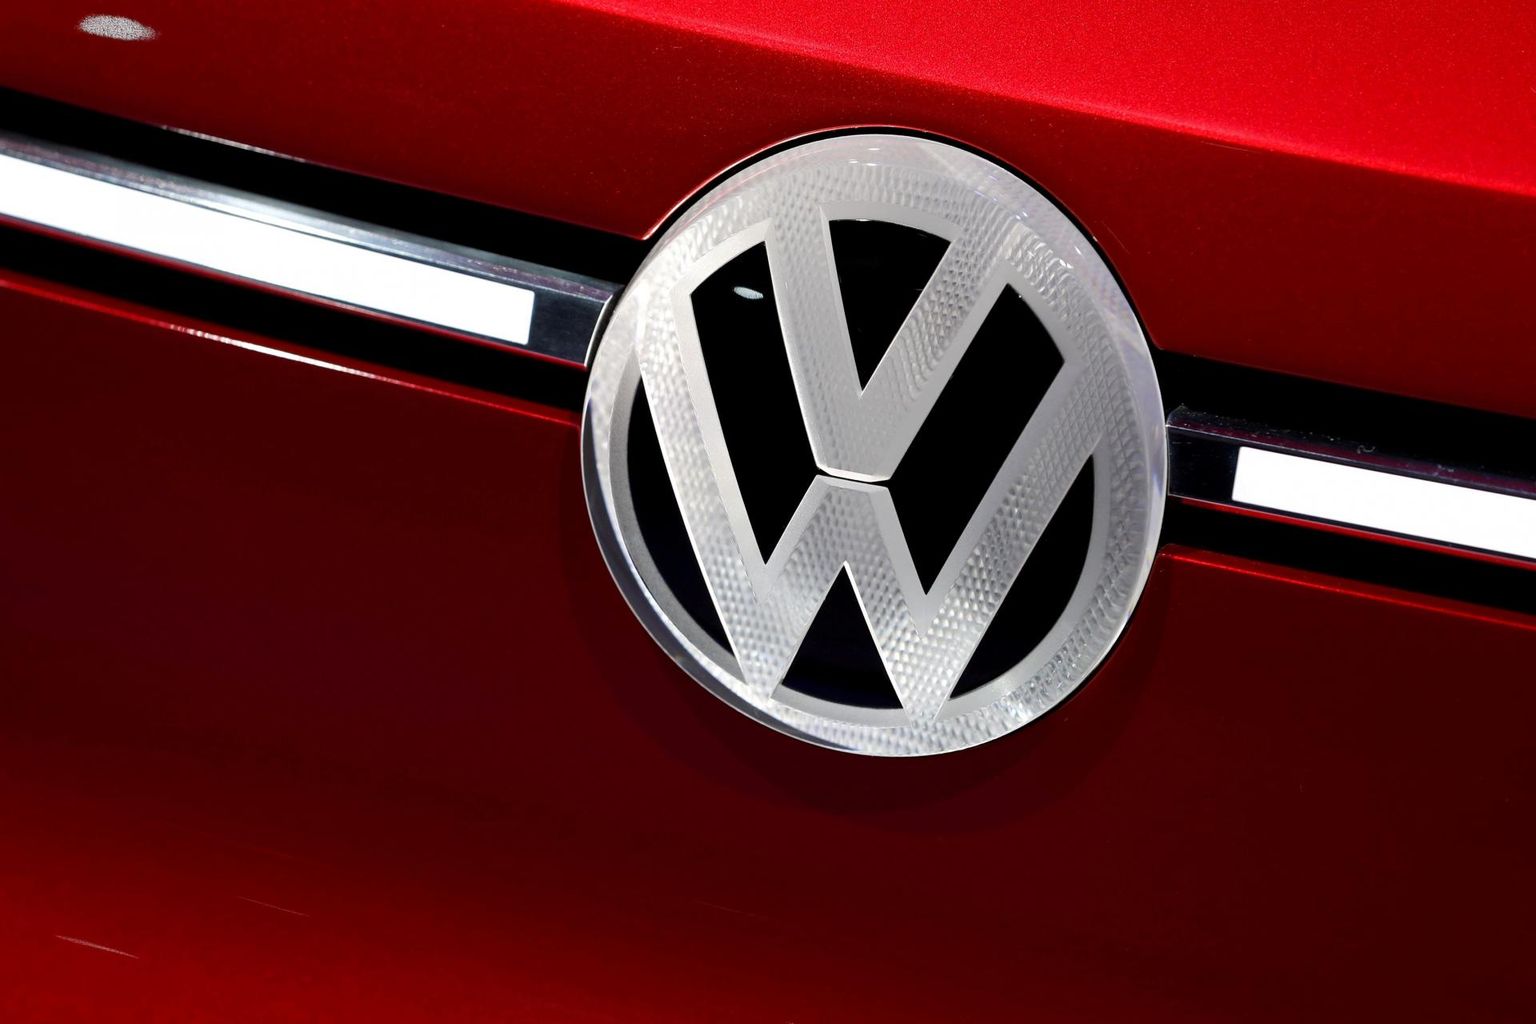 Maailma üks suuremaid autotootjaid Volkswagen asutas Eestis ettevõtte Car.Software Estonia AS.